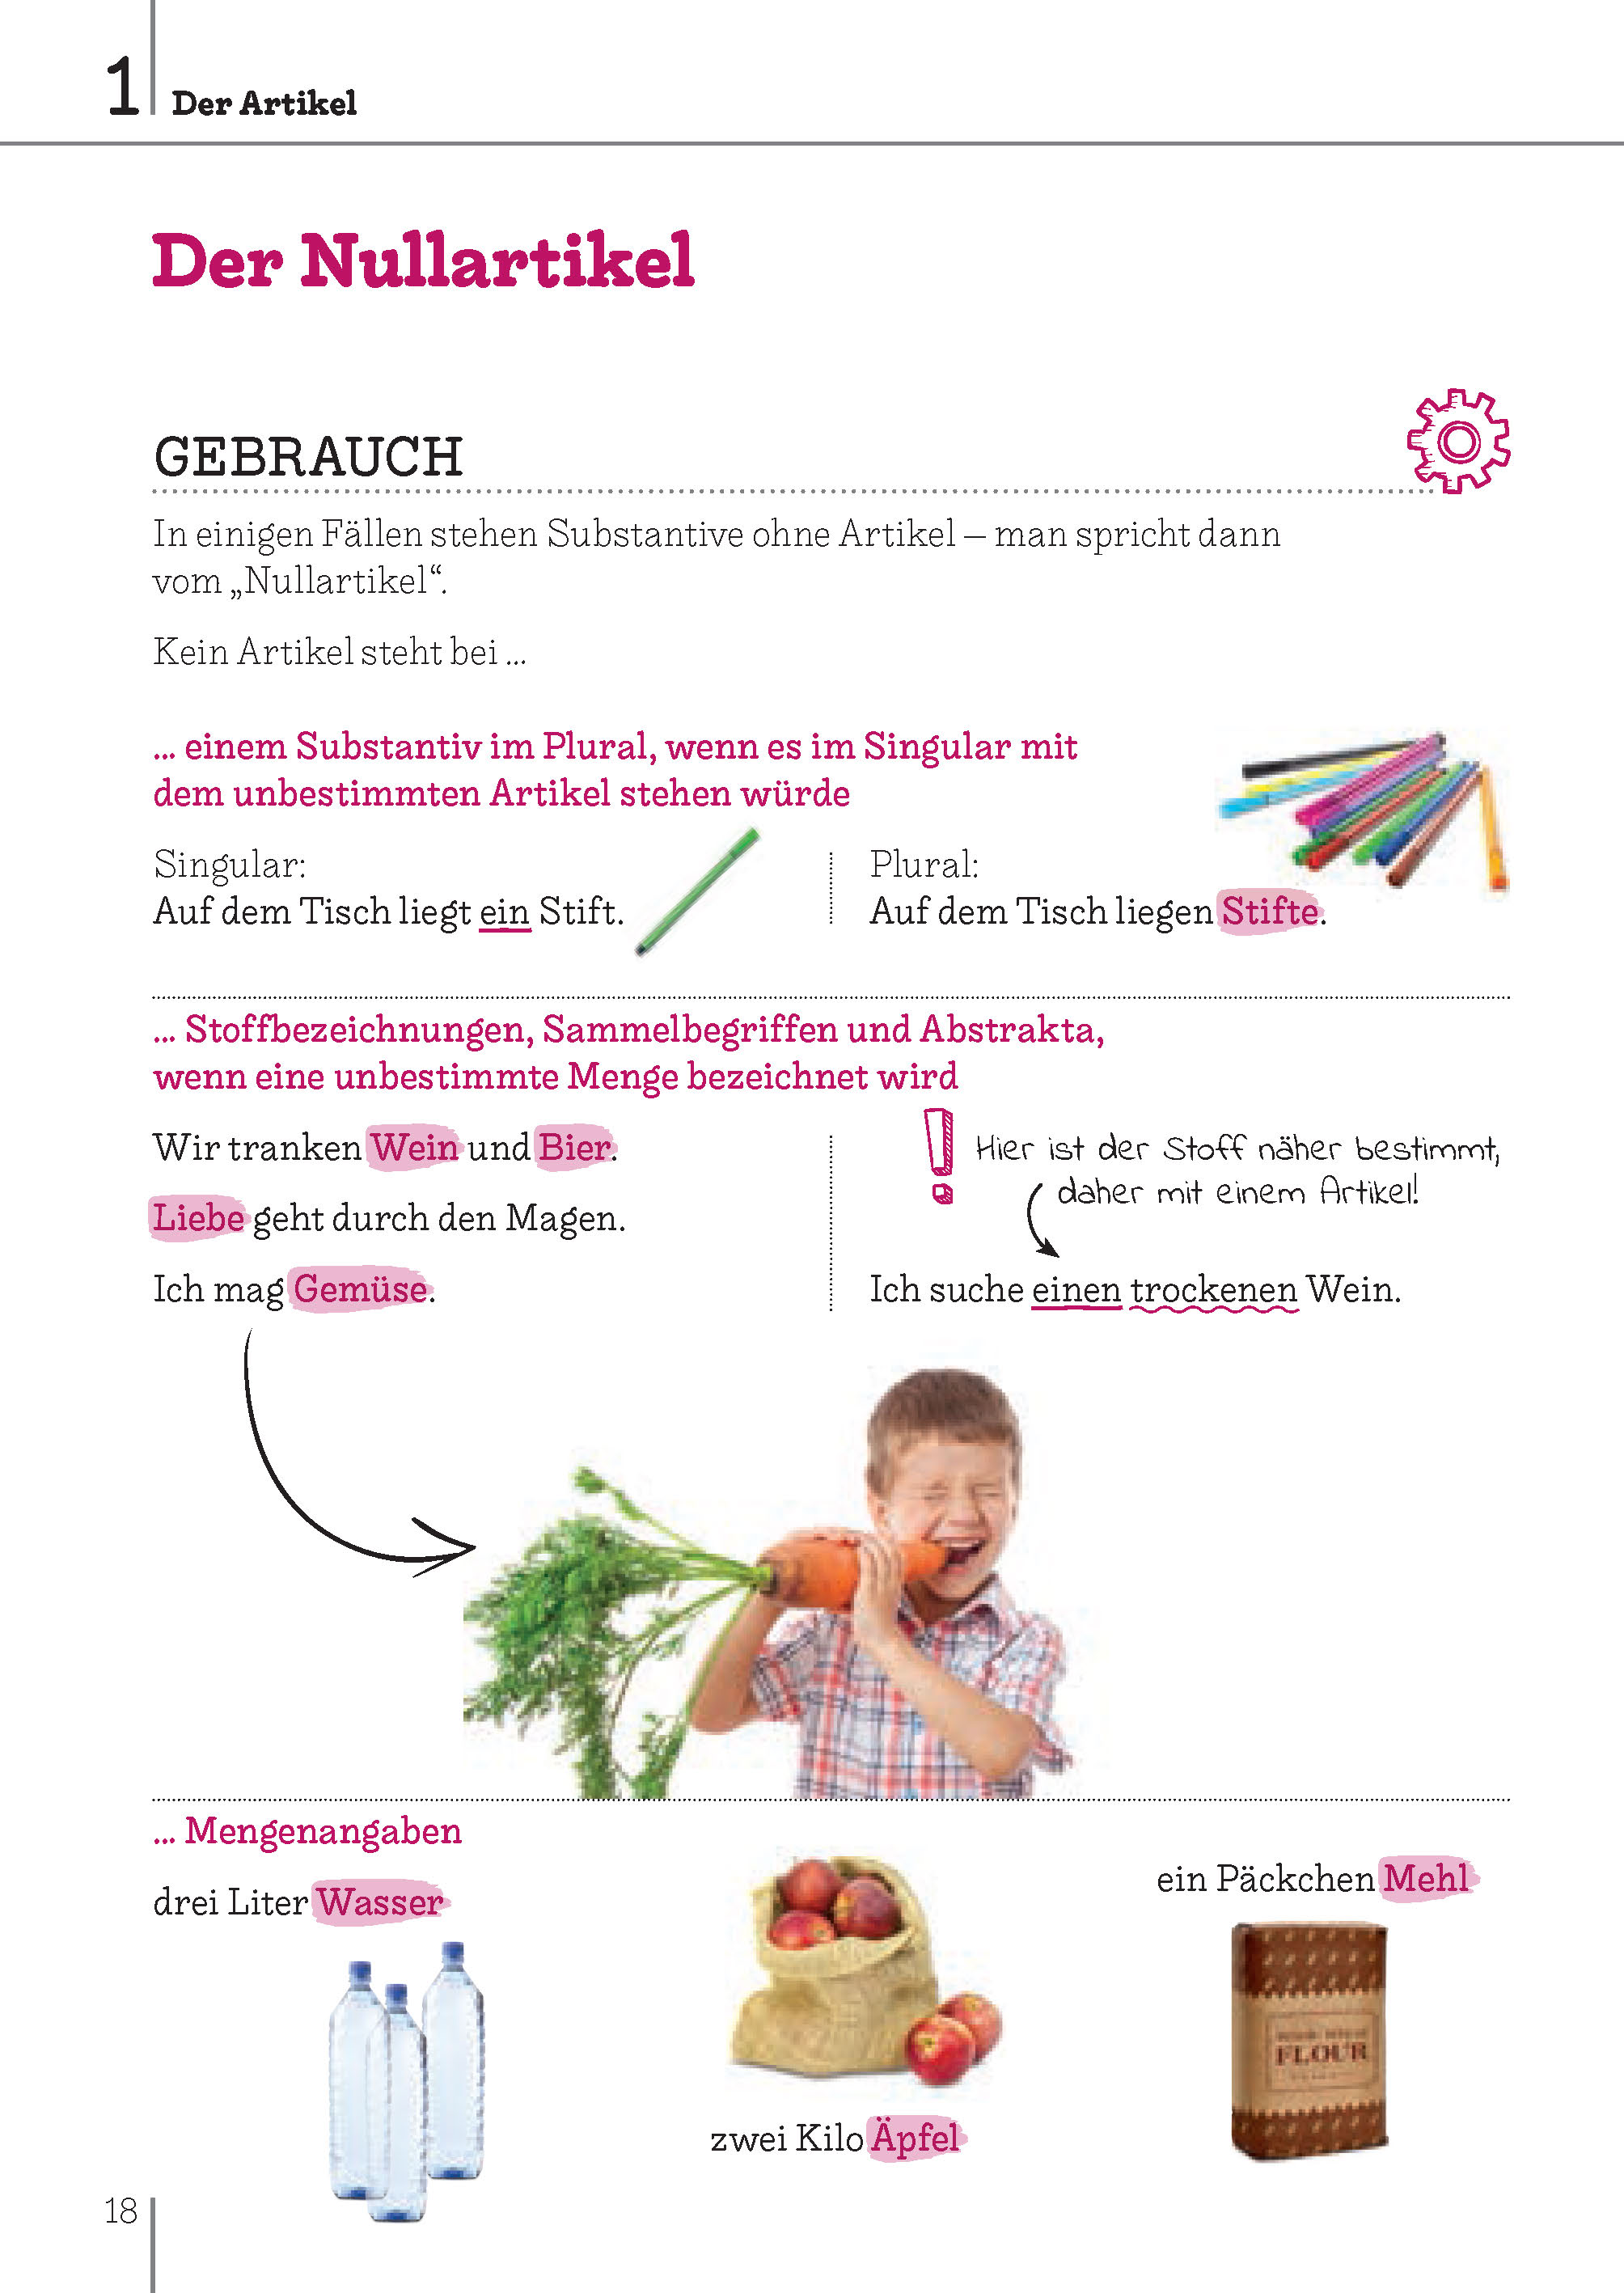 Langenscheidt Bild für Bild Grammatik Deutsch als Fremdsprache